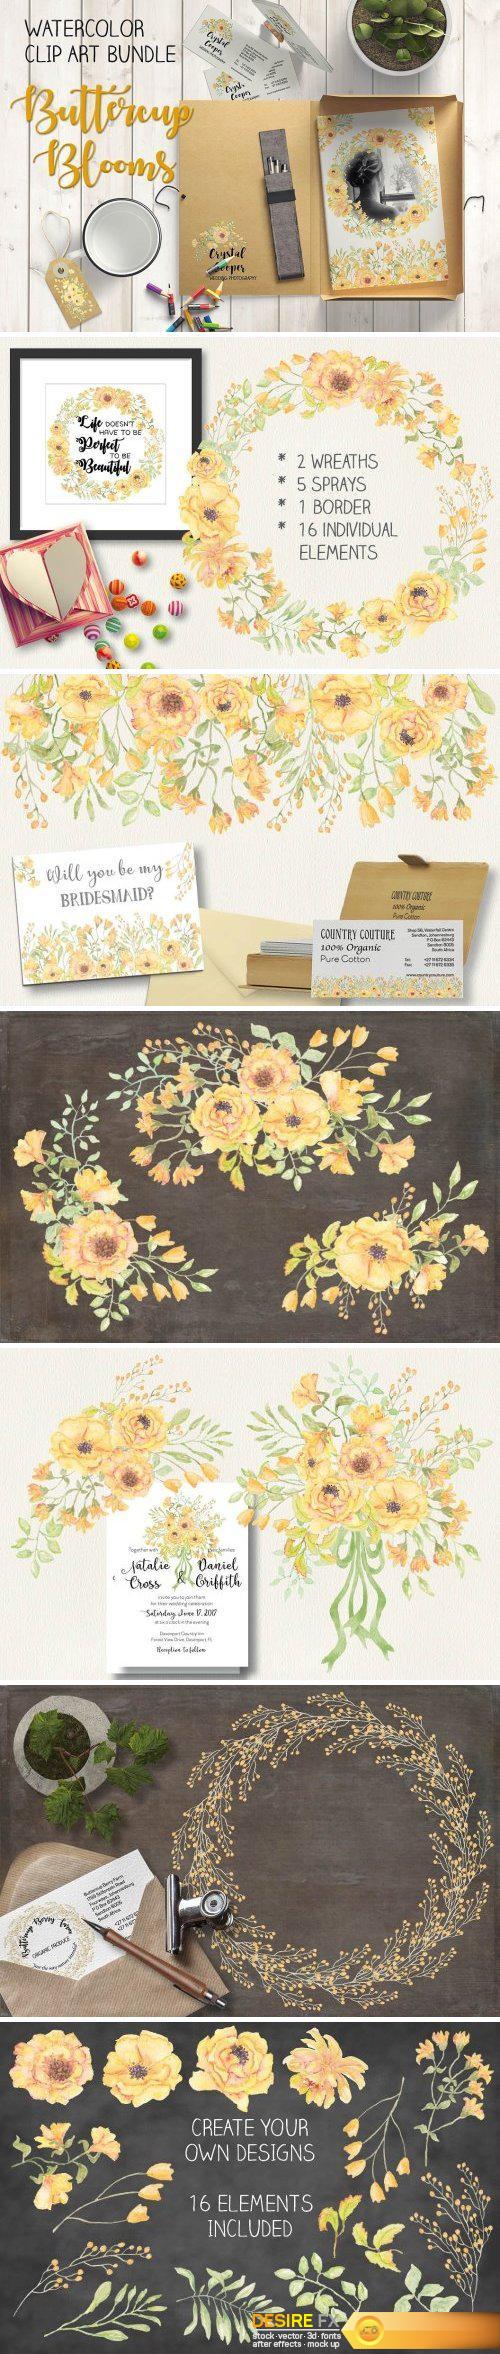 CM - Watercolor bundle: Buttercup blooms 1581184